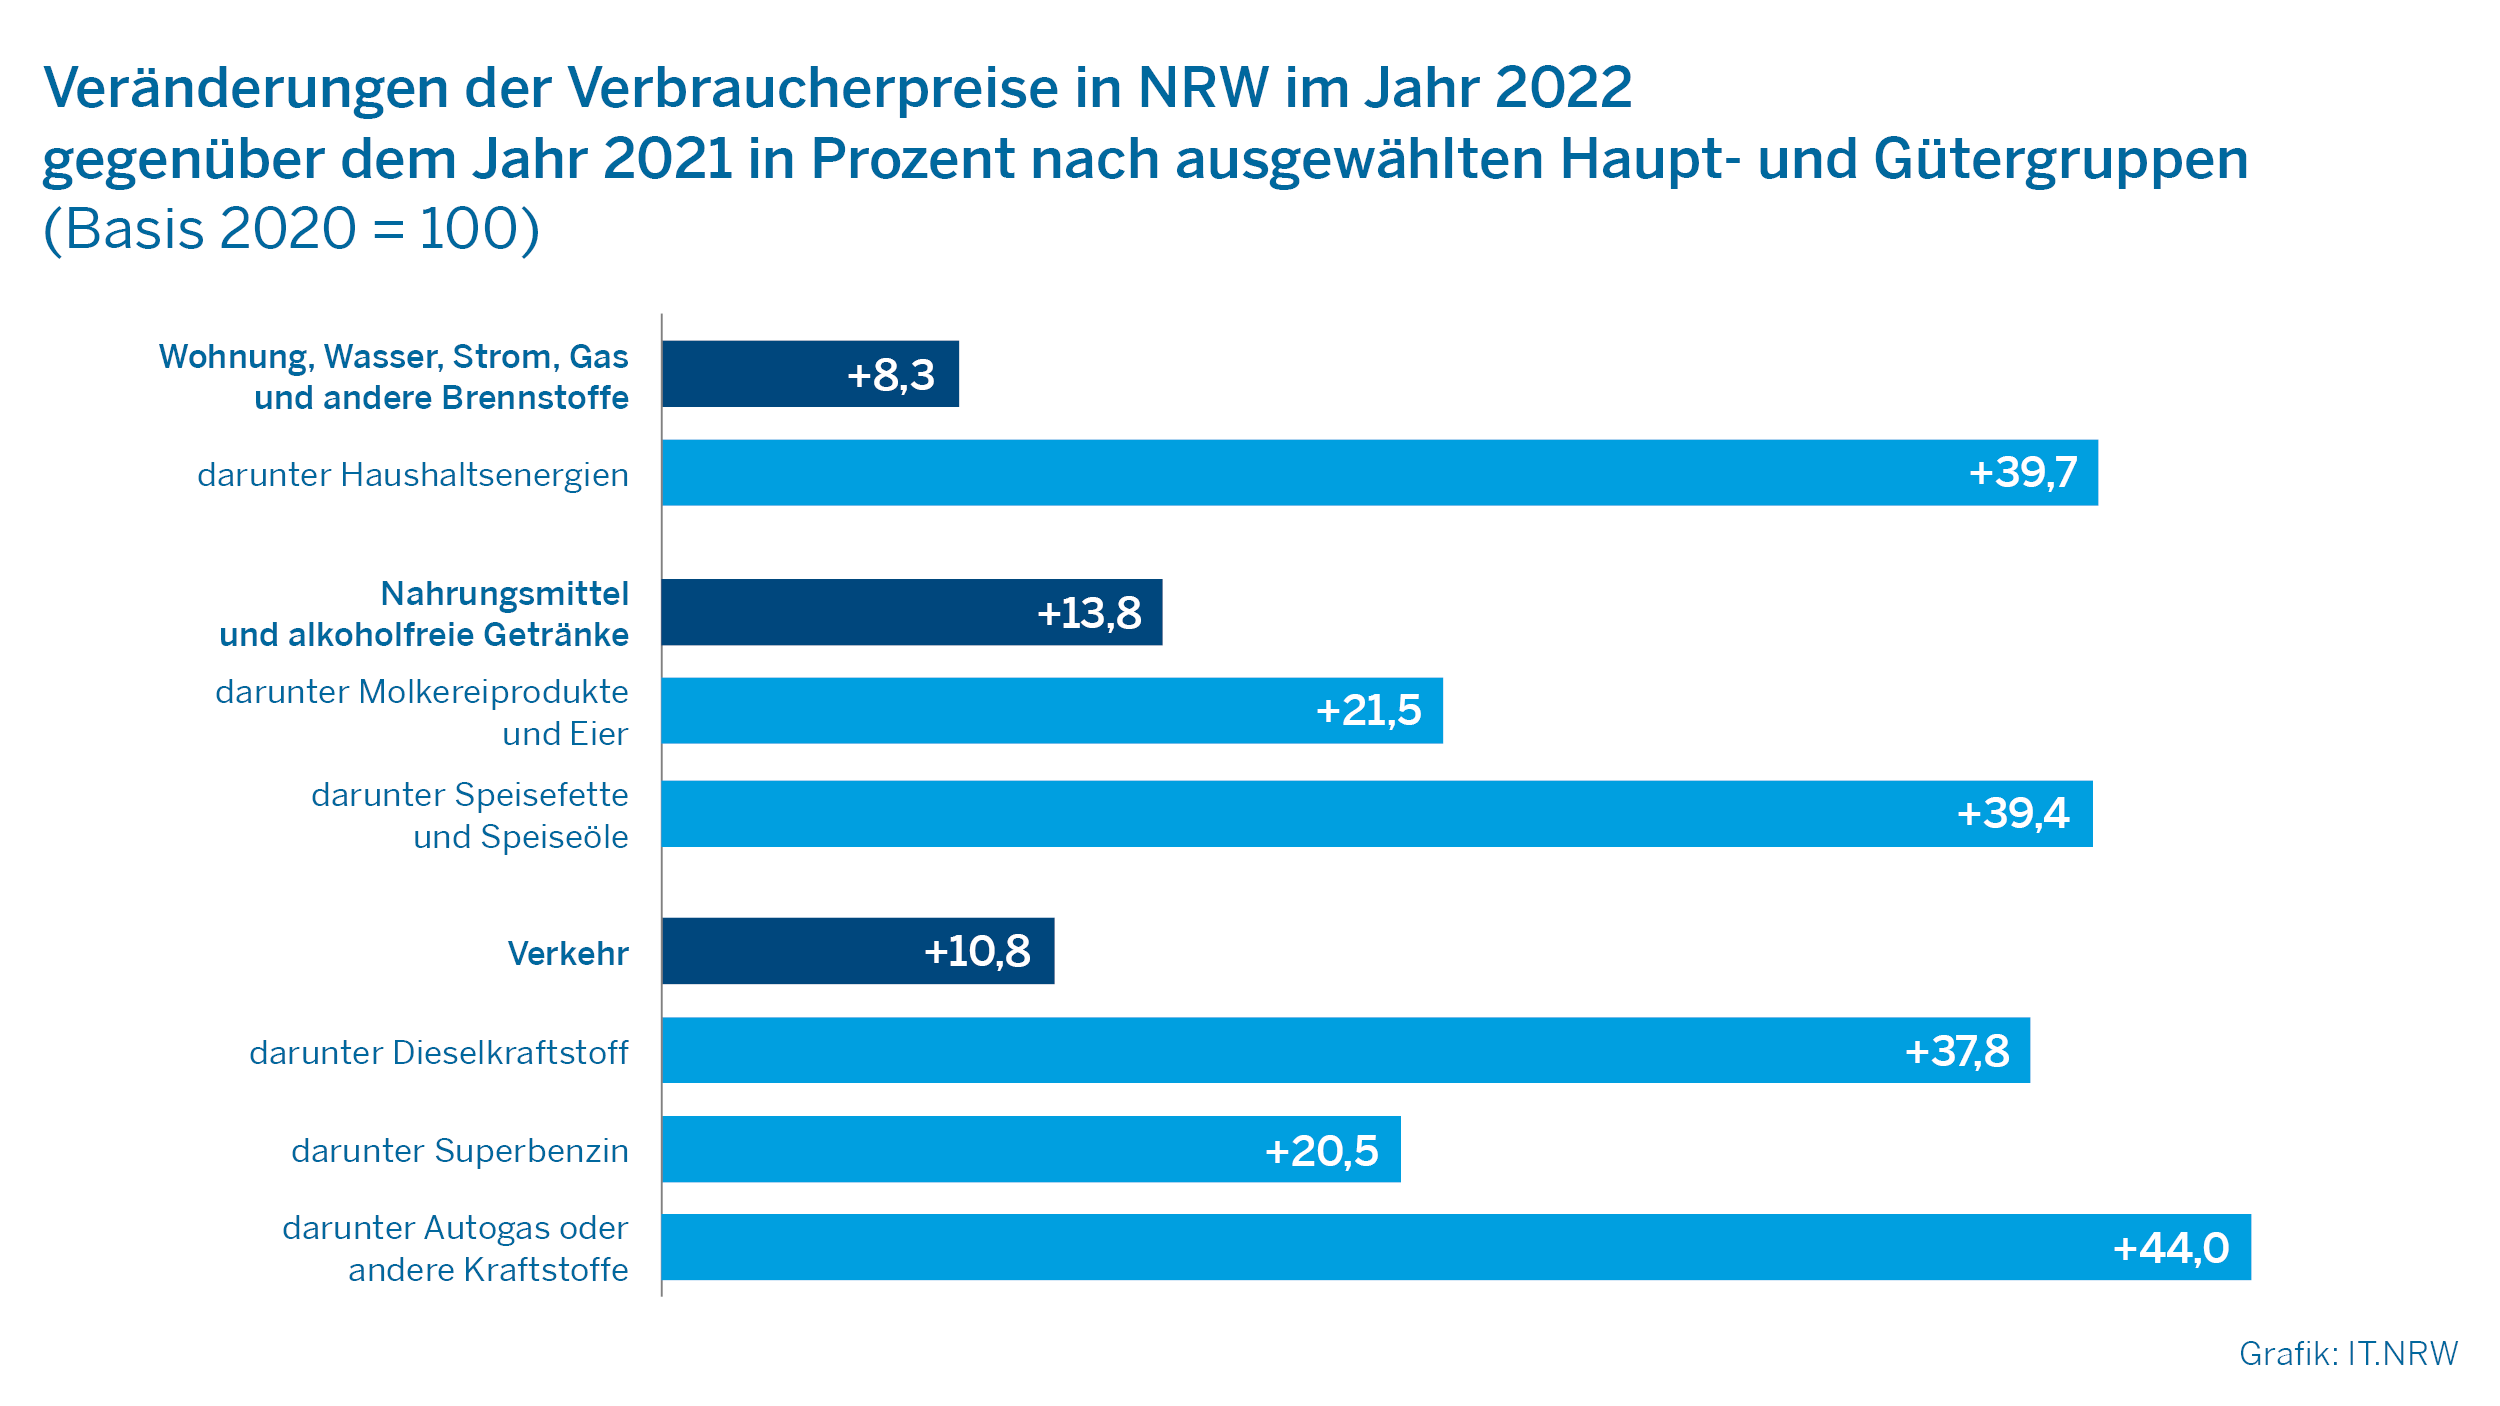 Veränderungen der Verbraucherpreise in NRW im Jahr 2022 gegenüber dem Jahr 2021